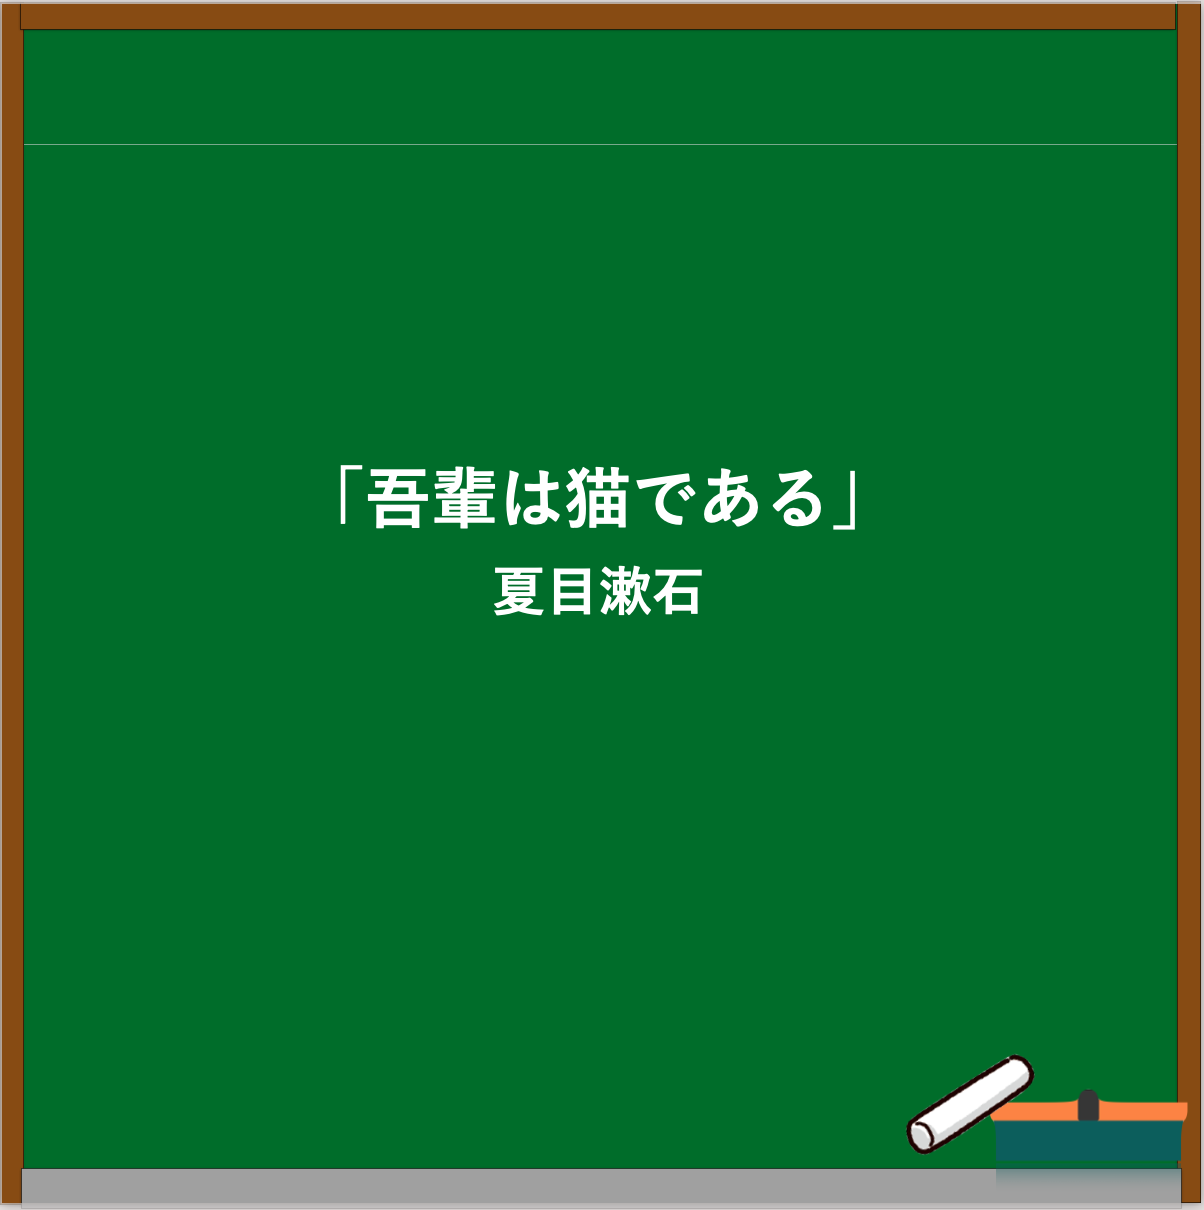 夏目漱石のエピソード・名言ブログのアイキャッチ画像